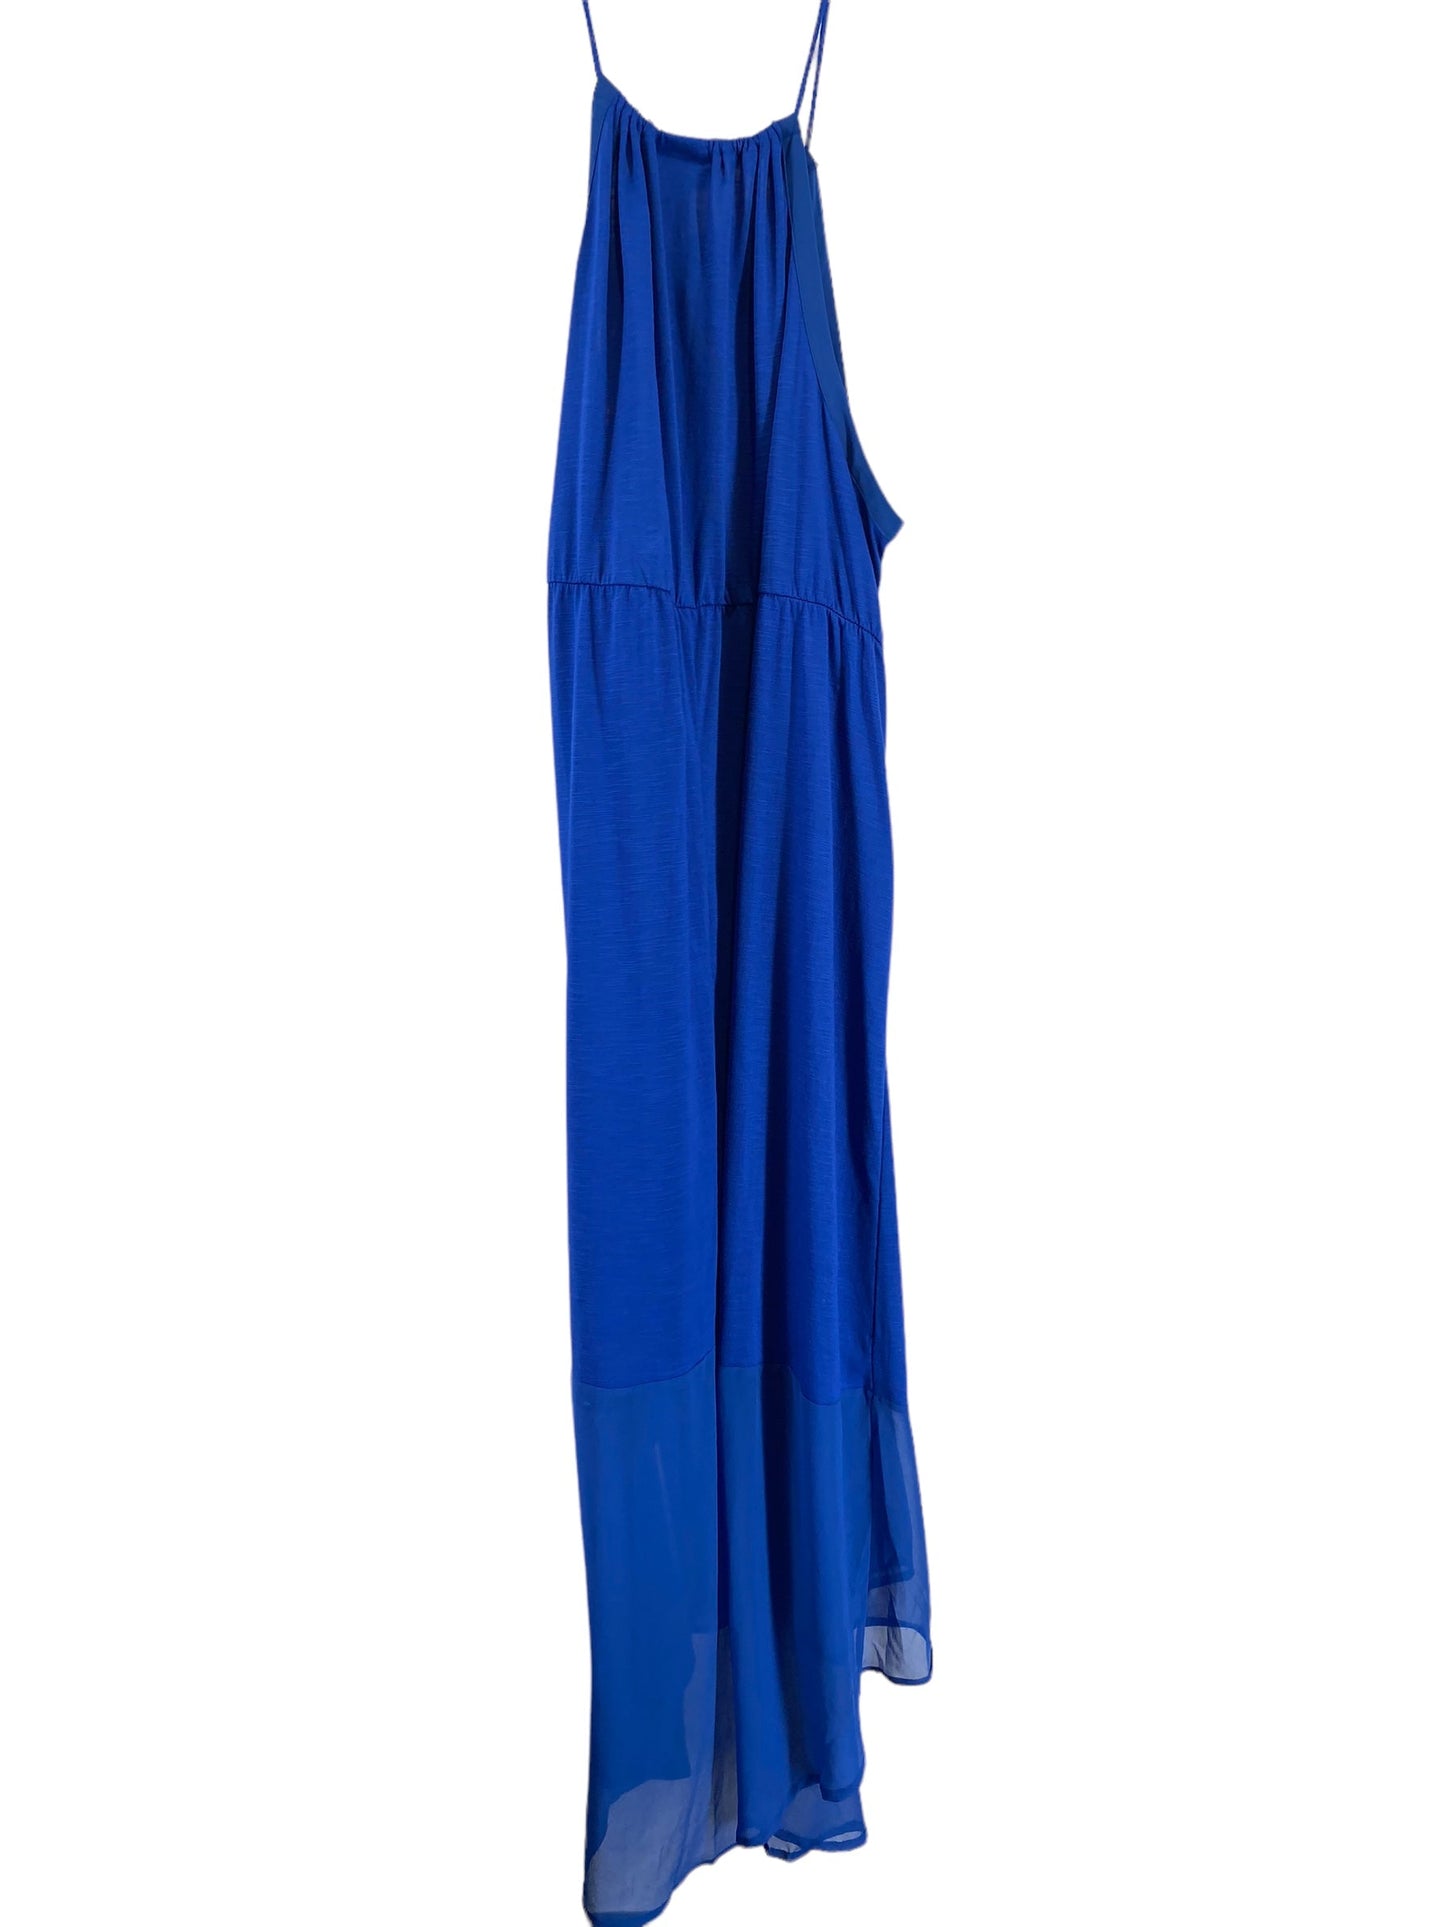 Dress Casual Midi By Lane Bryant  Size: 26